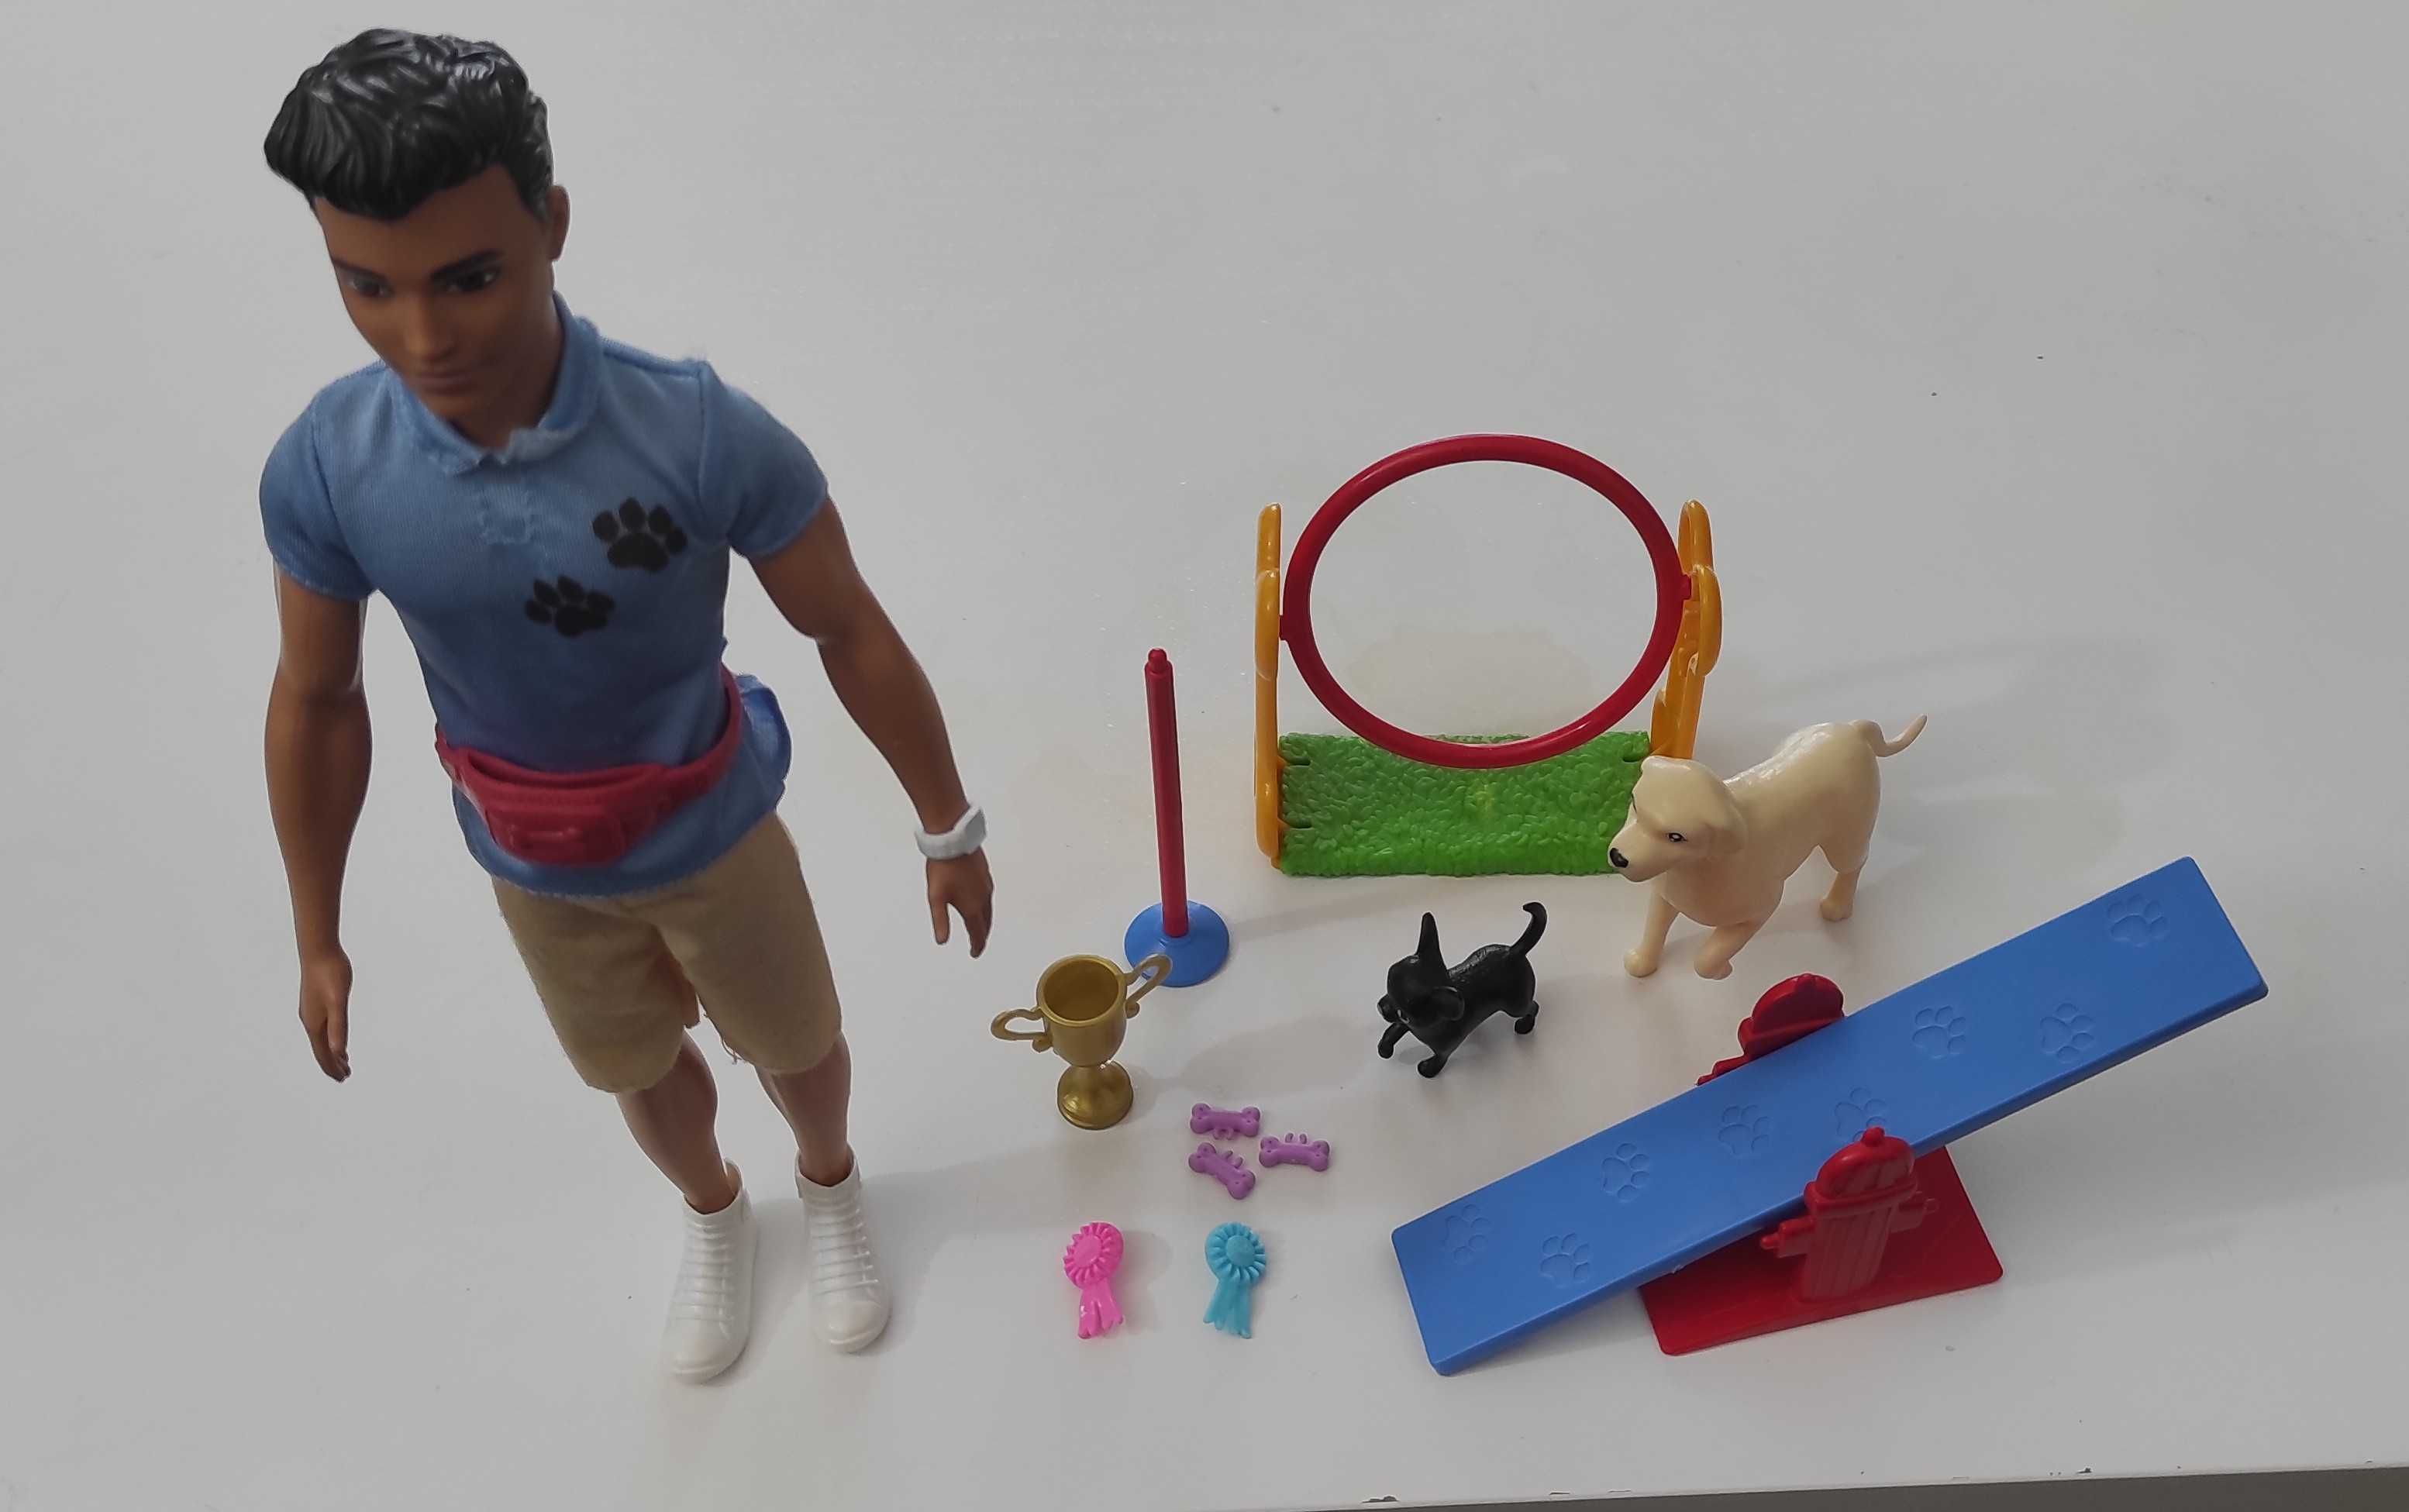 Barbie Ken: Set de joacă - Dresorul de câini